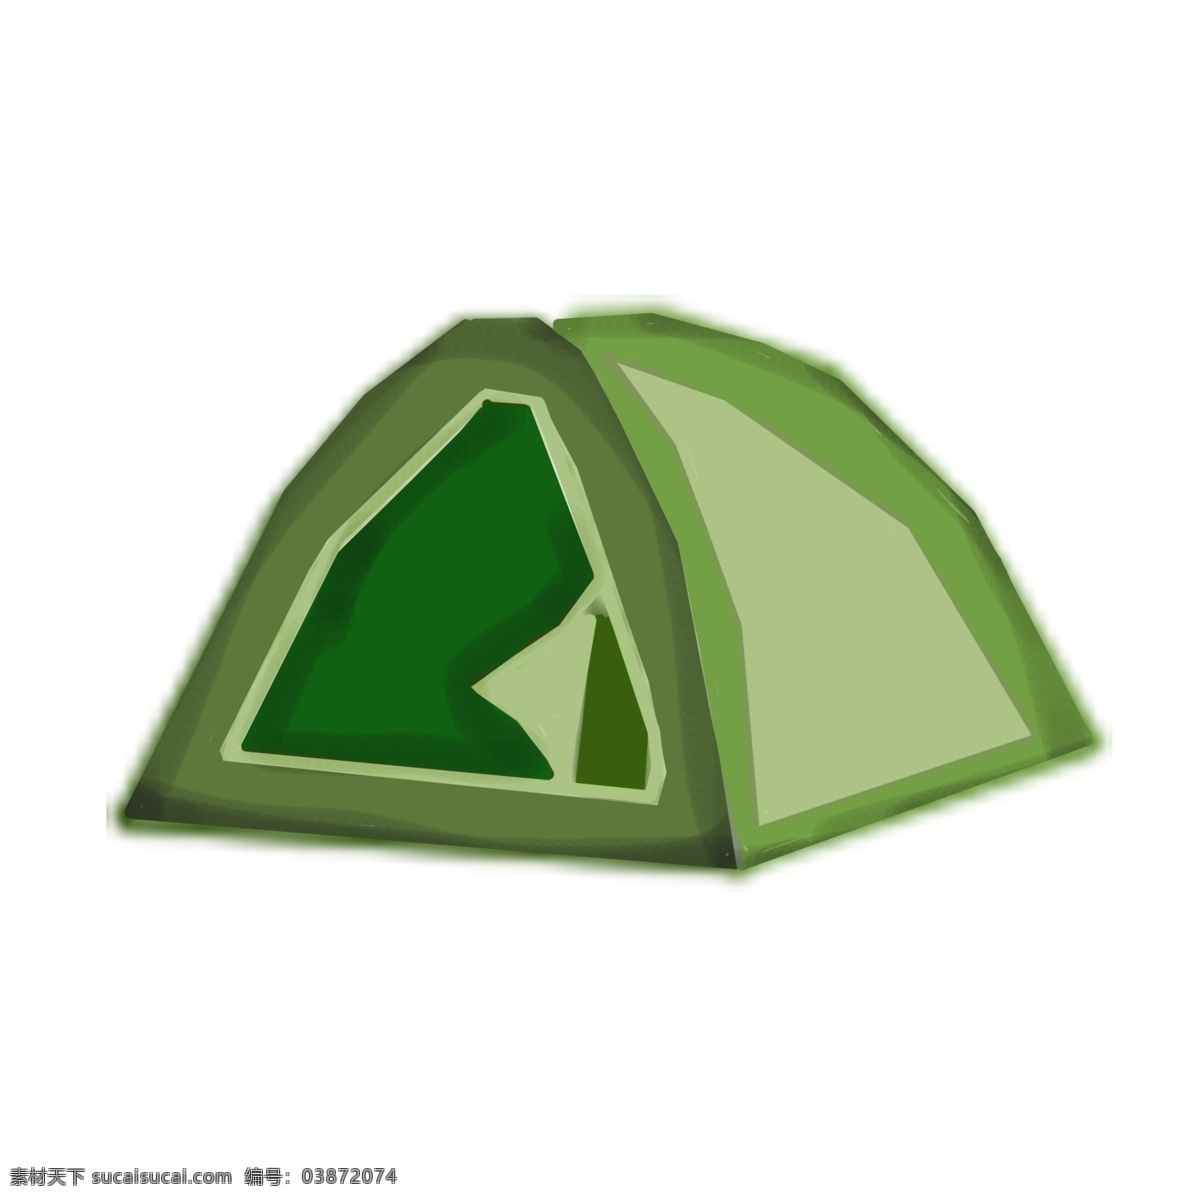 手绘 卡通 帐篷 插画 度假 卡通帐篷 绿色 宿营 绿色帐篷 手绘帐篷 帐篷插画 宿营帐篷